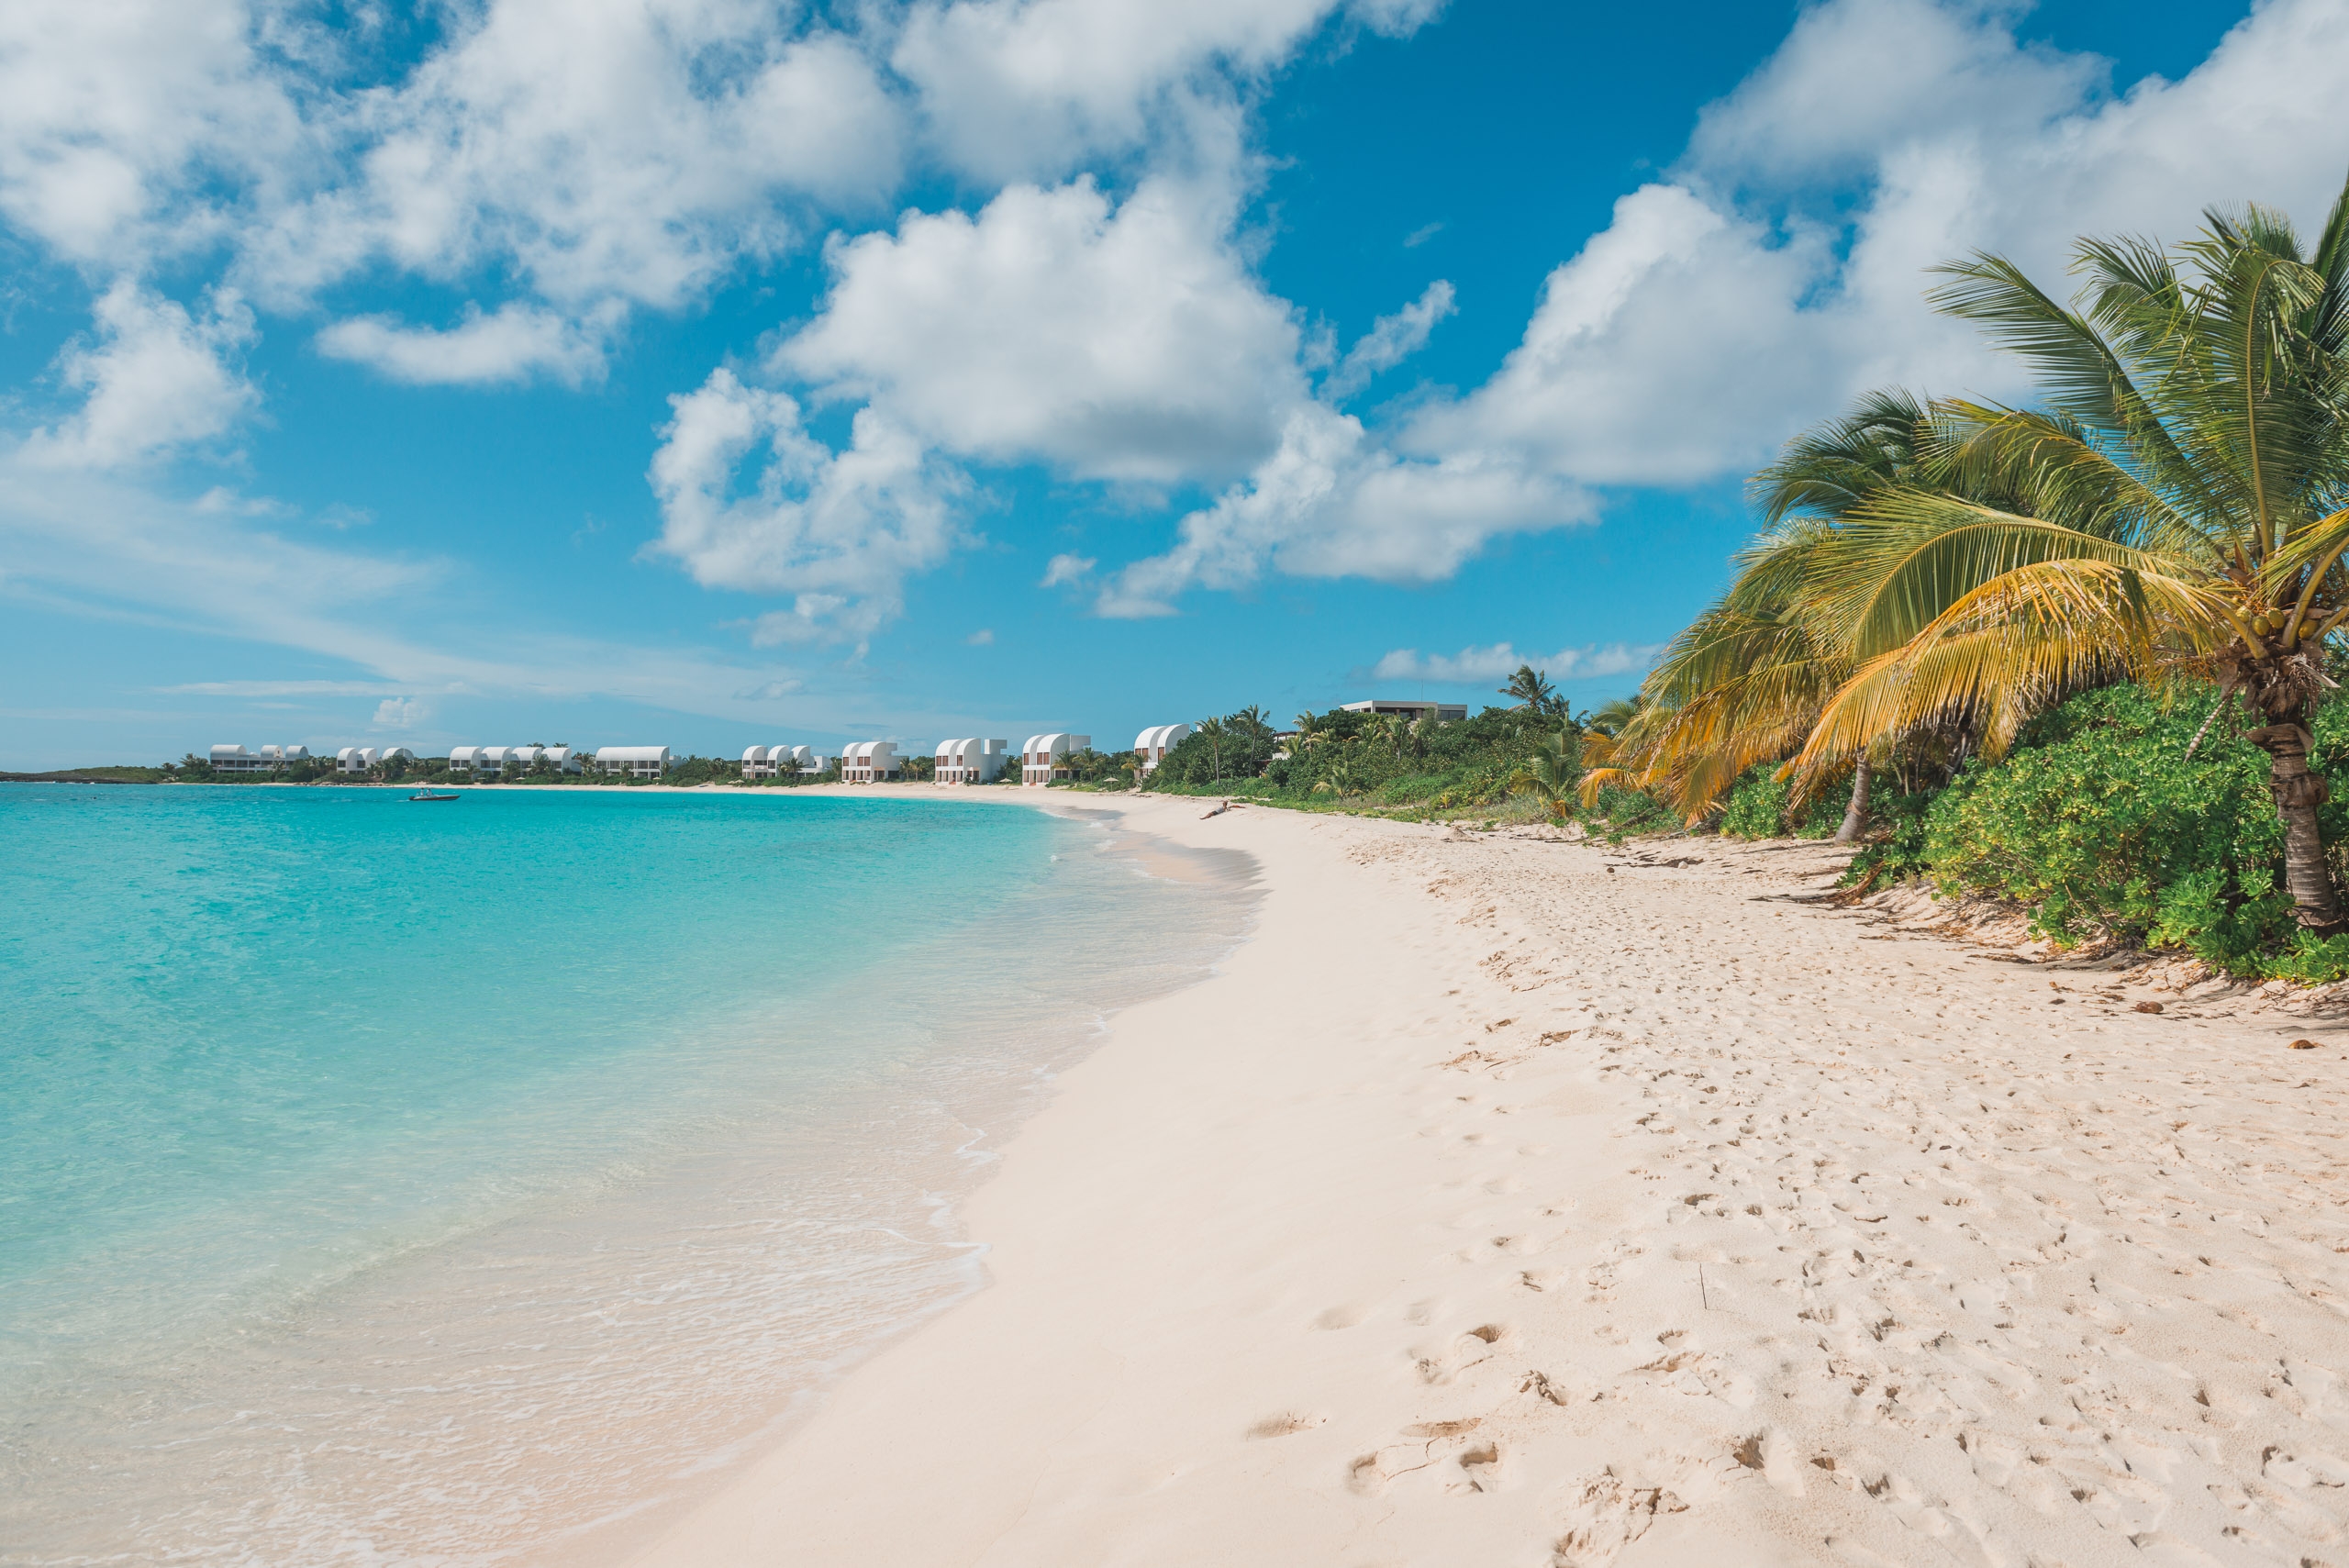 The Cap Juluca Resort in Anguilla - Part II